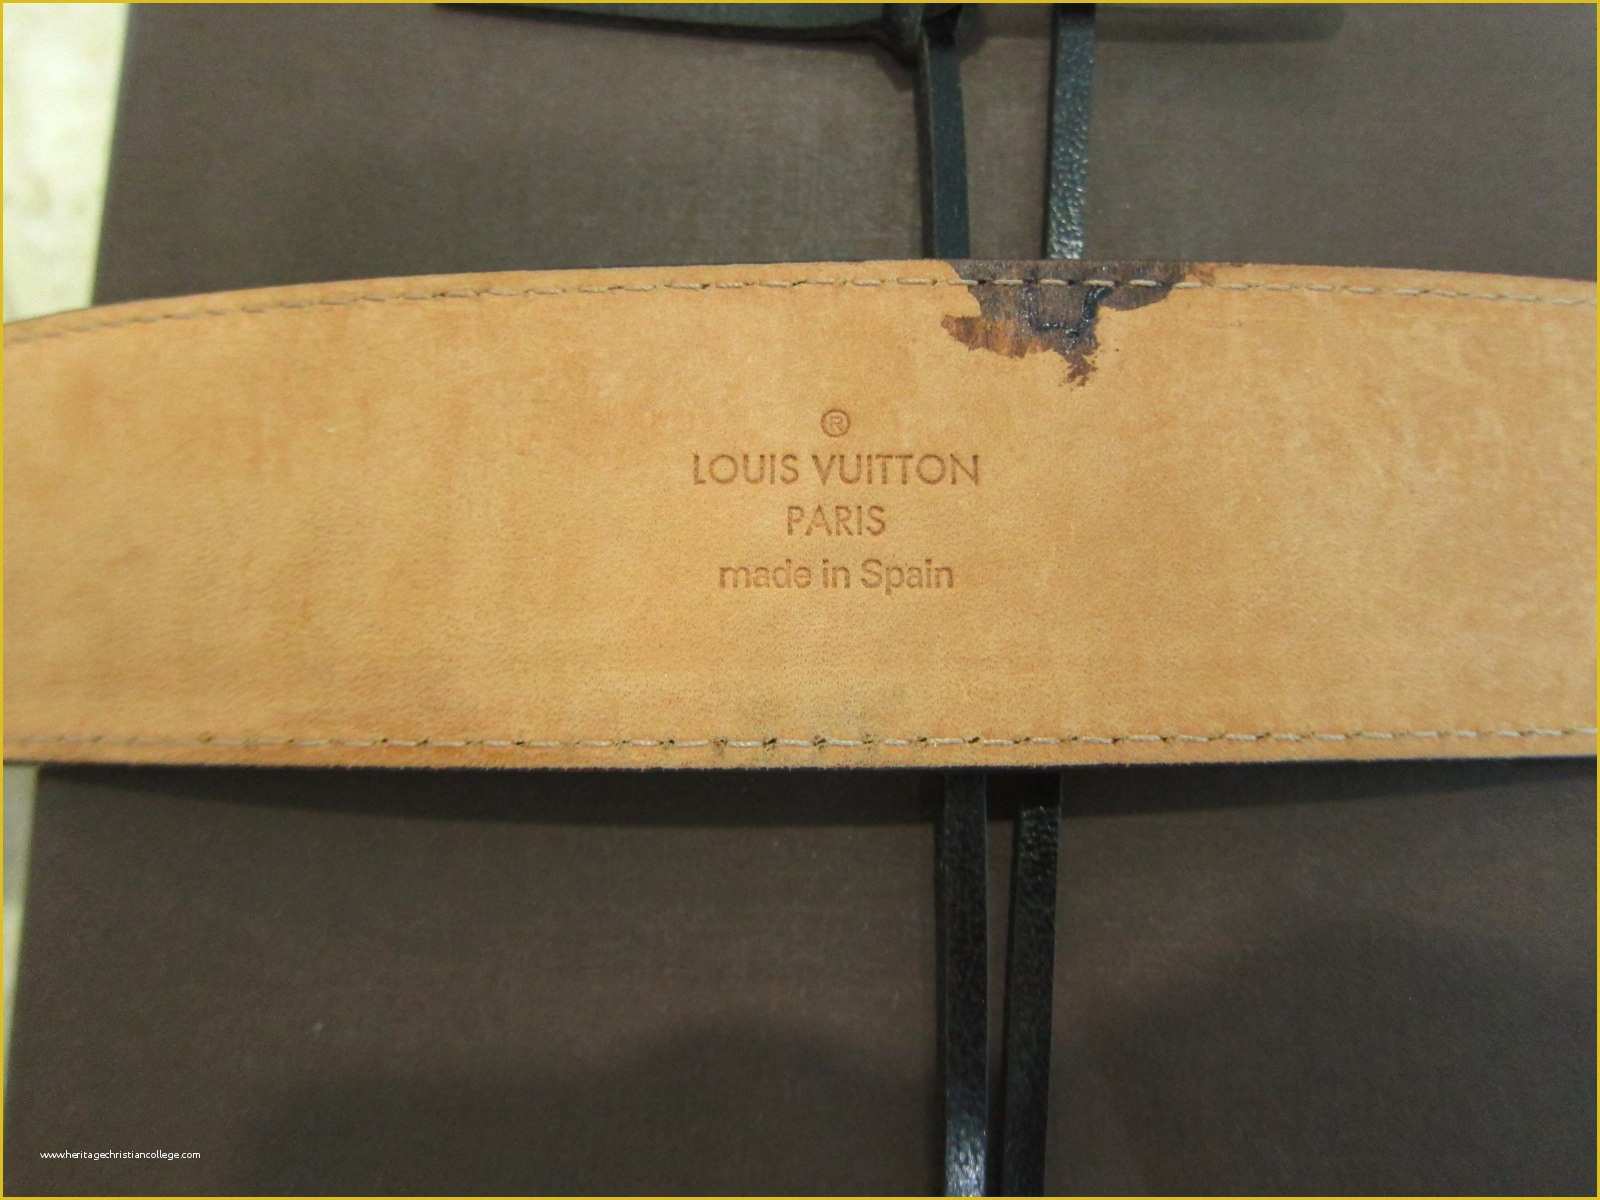 Louis Vuitton Receipt Template Free Of Louis Vuitton Belt Receipt Image Belt